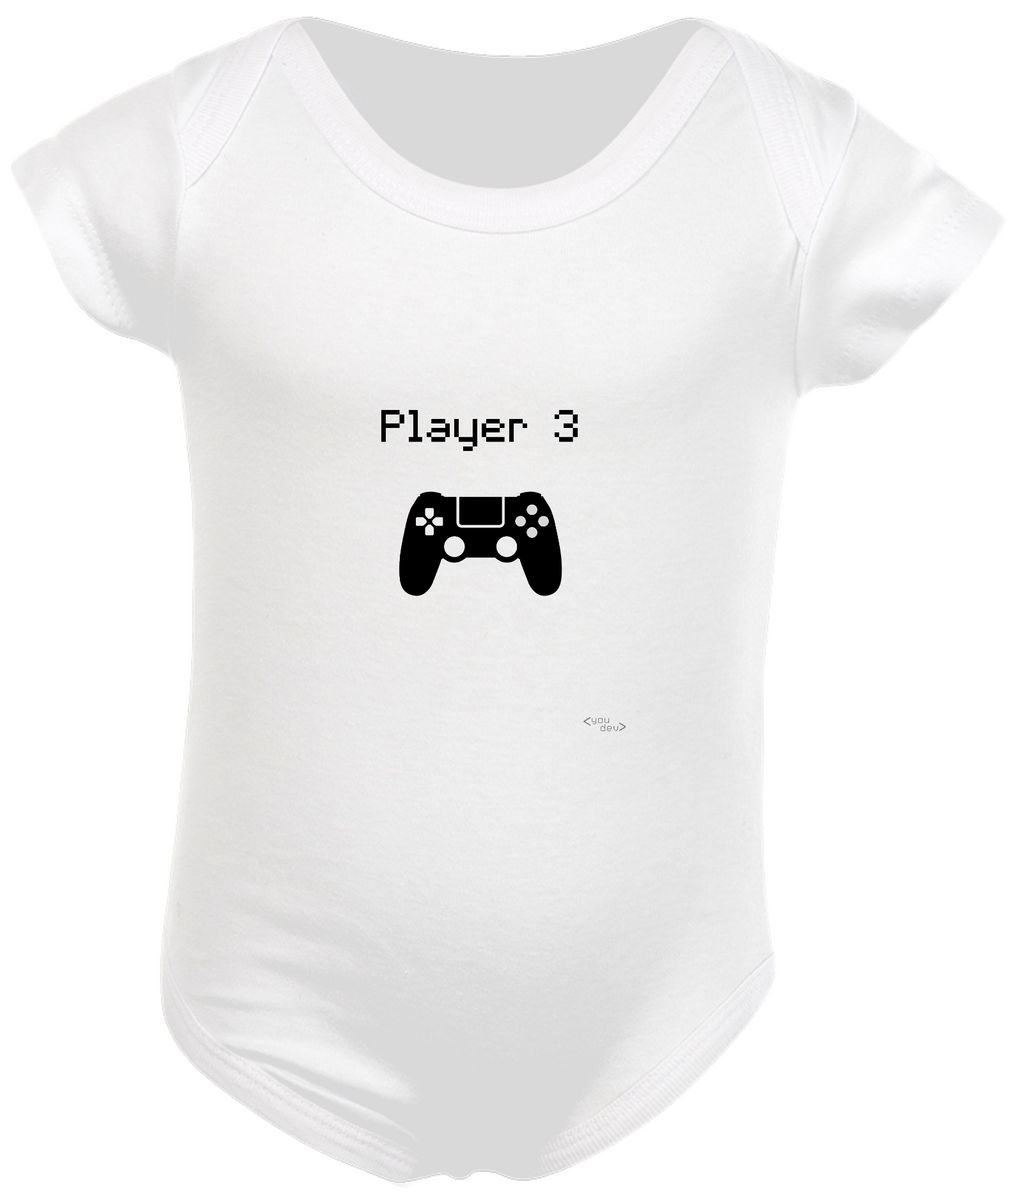 Nome do produto: Player 3